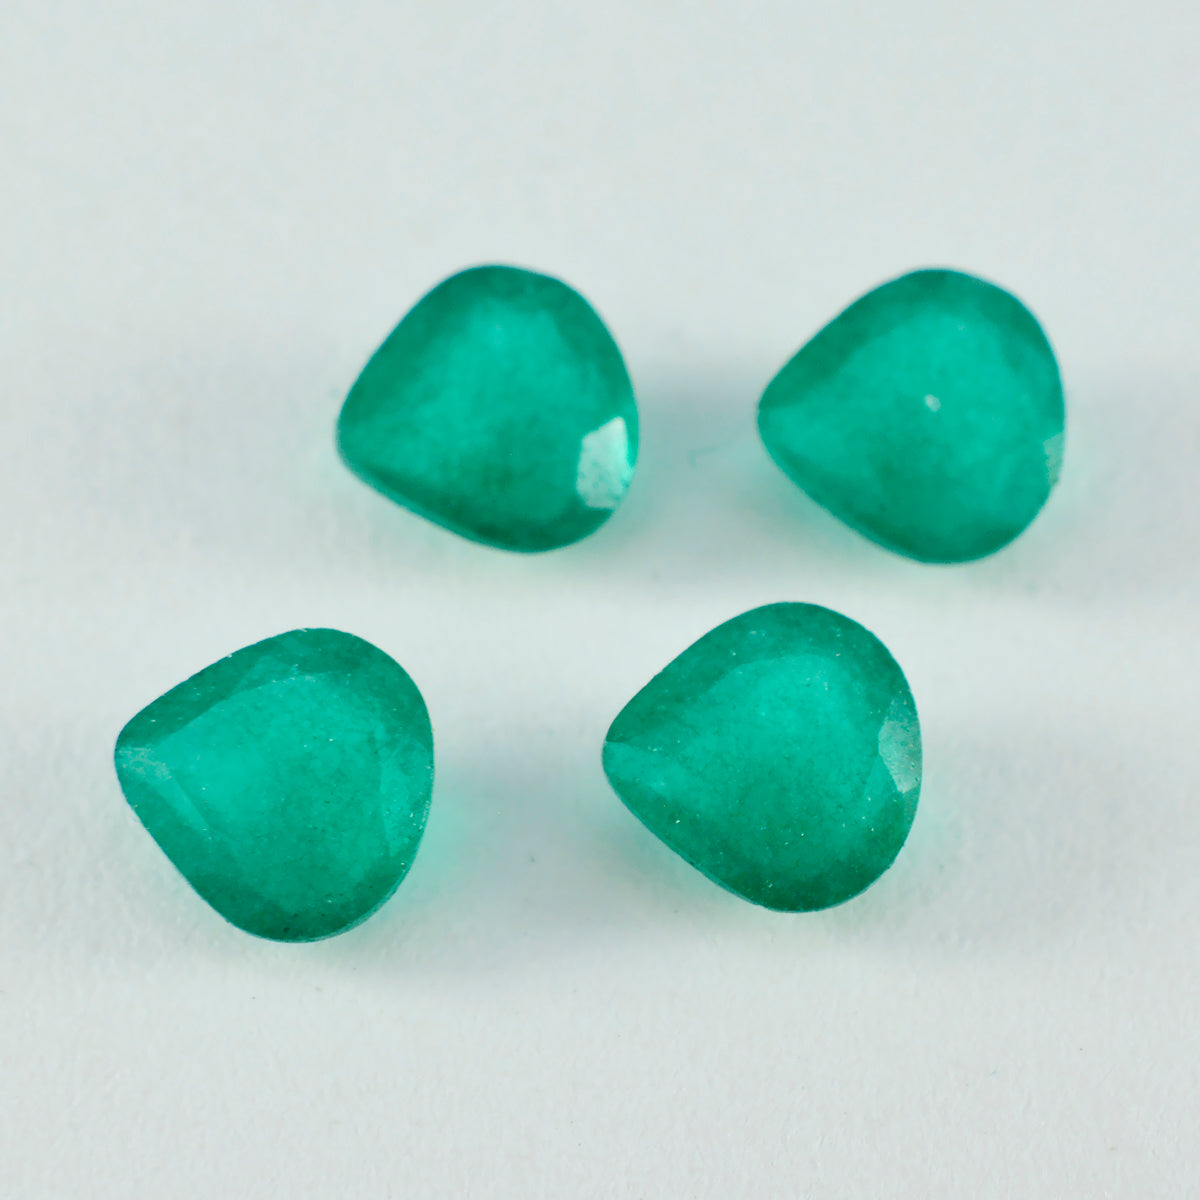 riyogems 1 шт. натуральная зеленая яшма ограненная 14x14 мм драгоценный камень в форме сердца хорошего качества